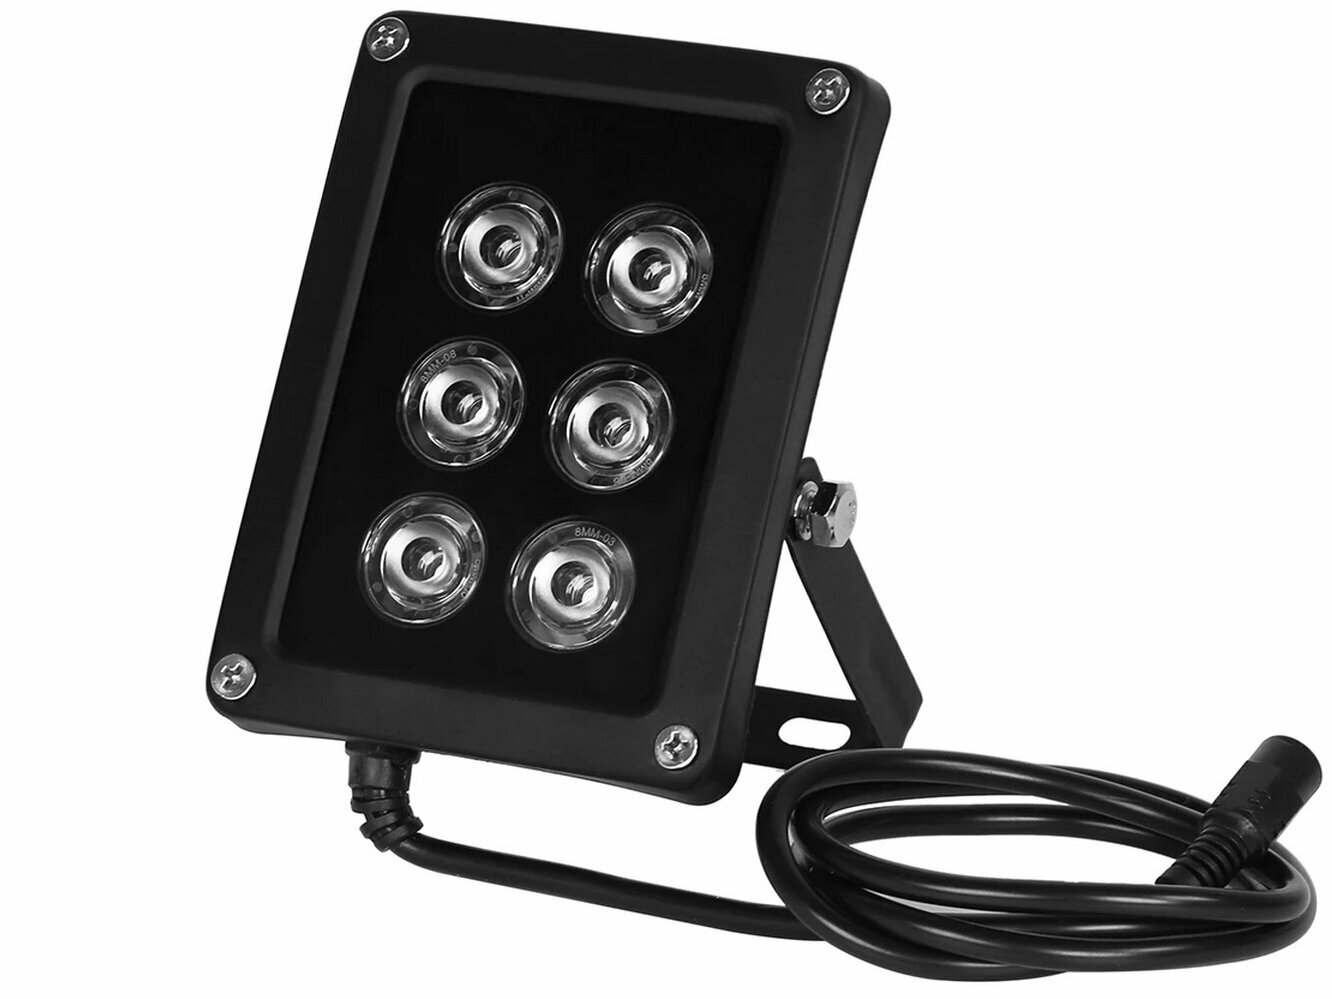 ИК-прожектор для камер видеонаблюдения - KDM-6045С (металлический корпус IP-65 6 светодиодов - до 60 метров)